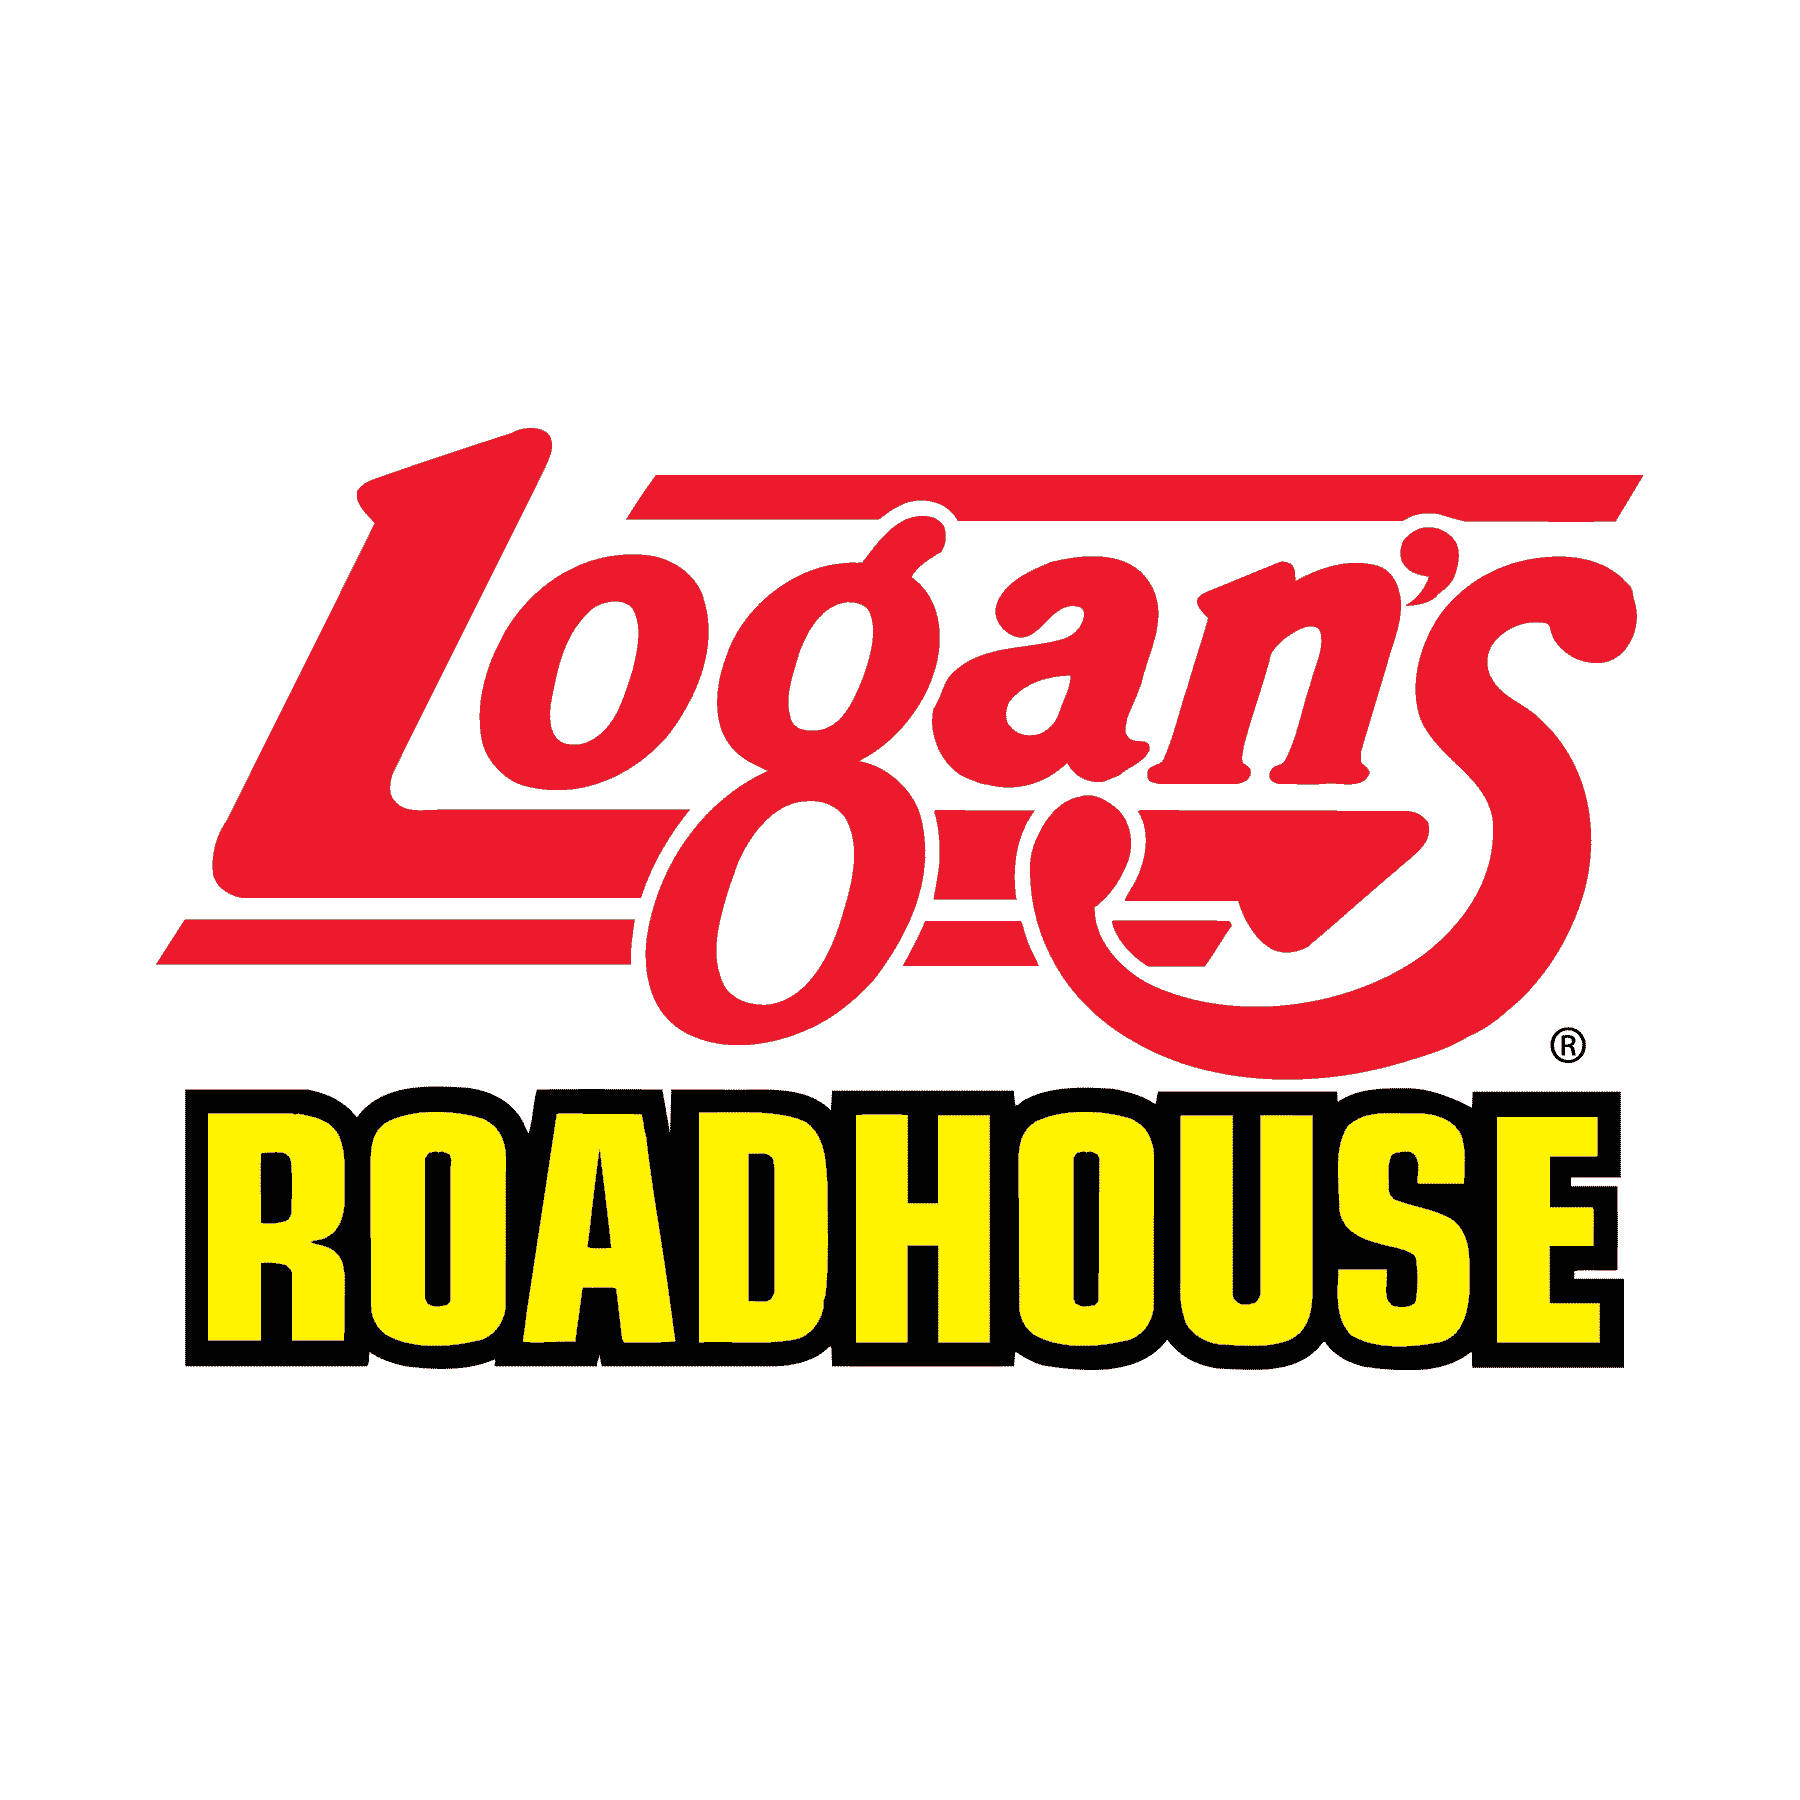 Logan's